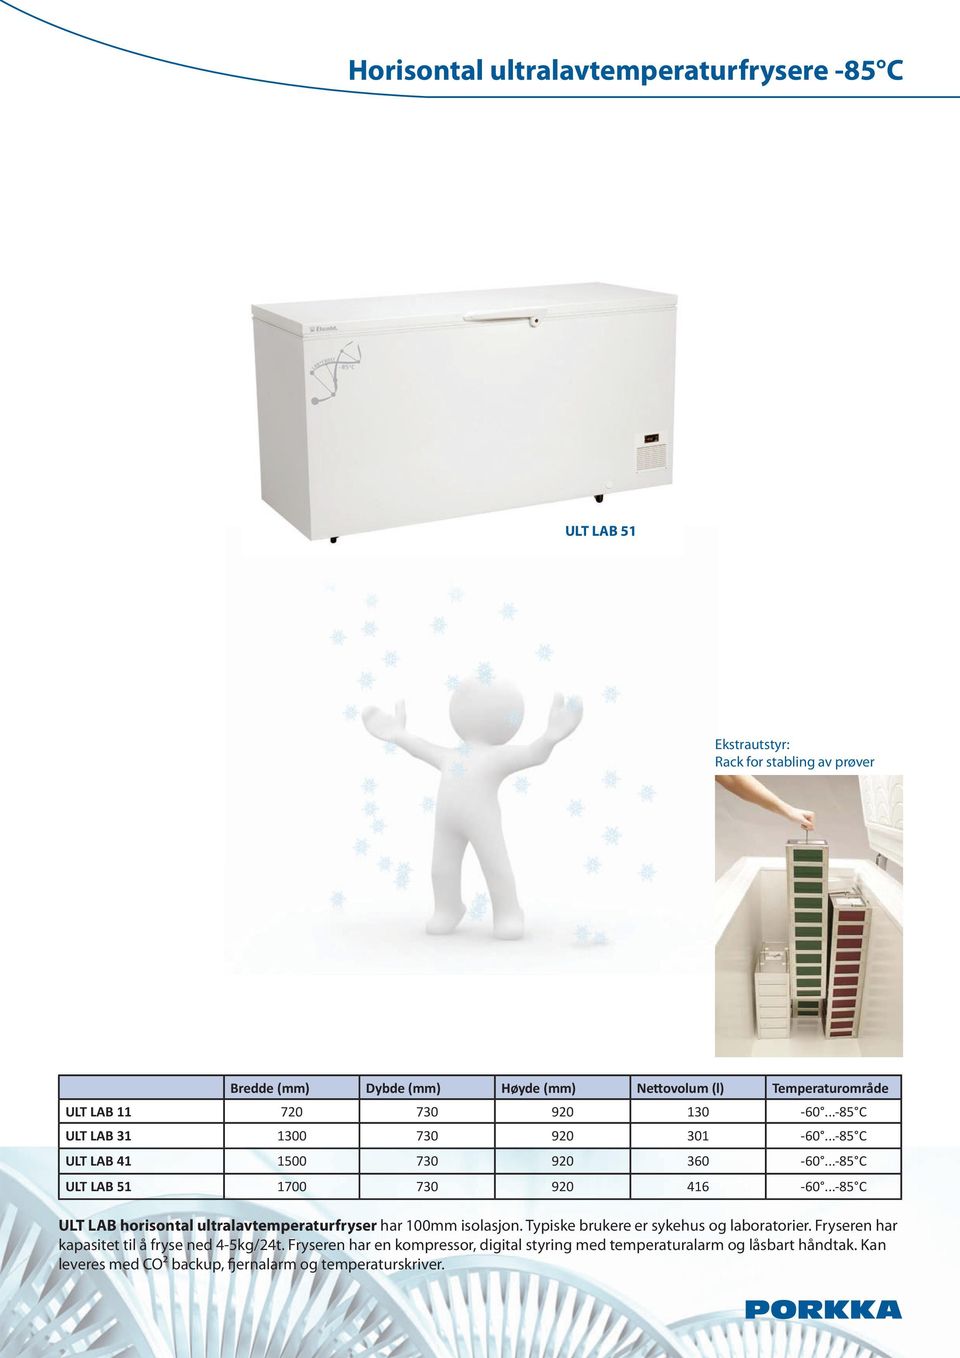 ..-85 C ULT LAB horisontal ultralavtemperaturfryser har 100mm isolasjon. Typiske brukere er sykehus og laboratorier.